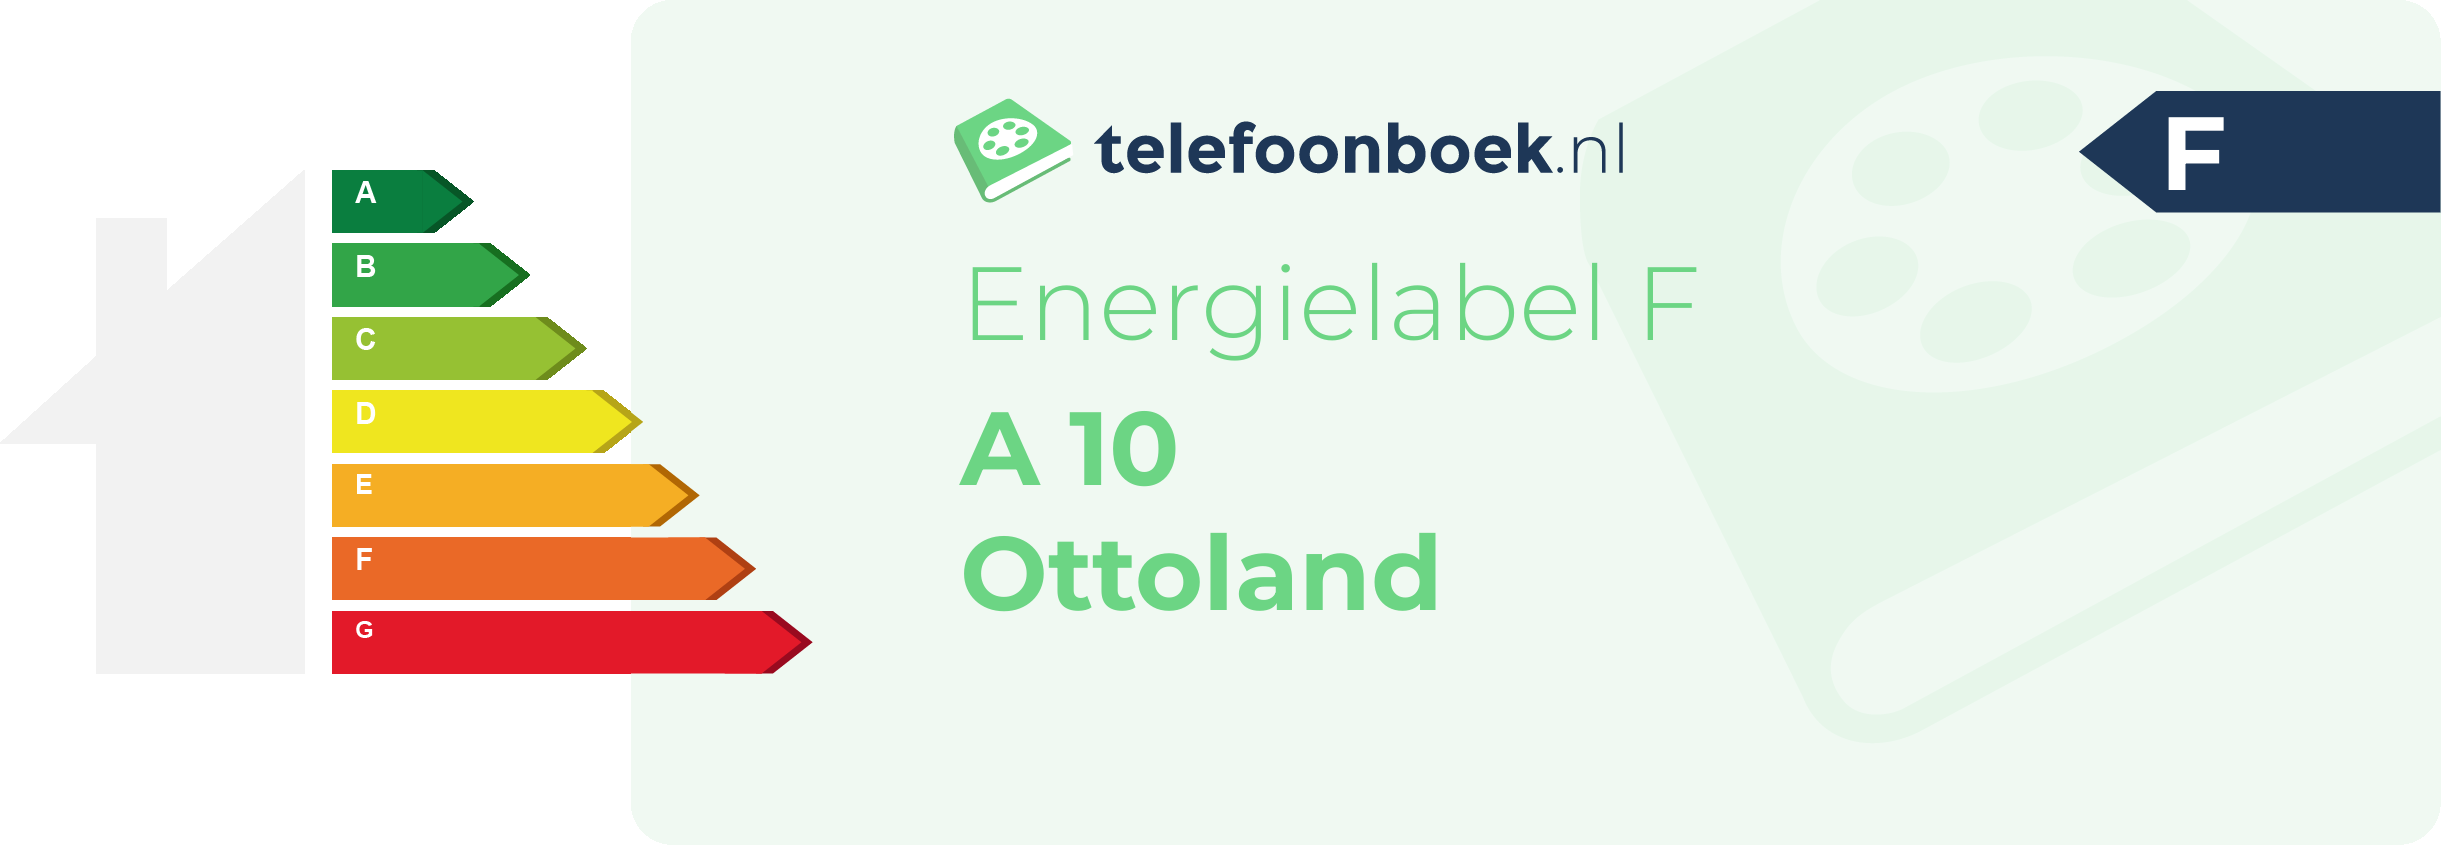 Energielabel A 10 Ottoland